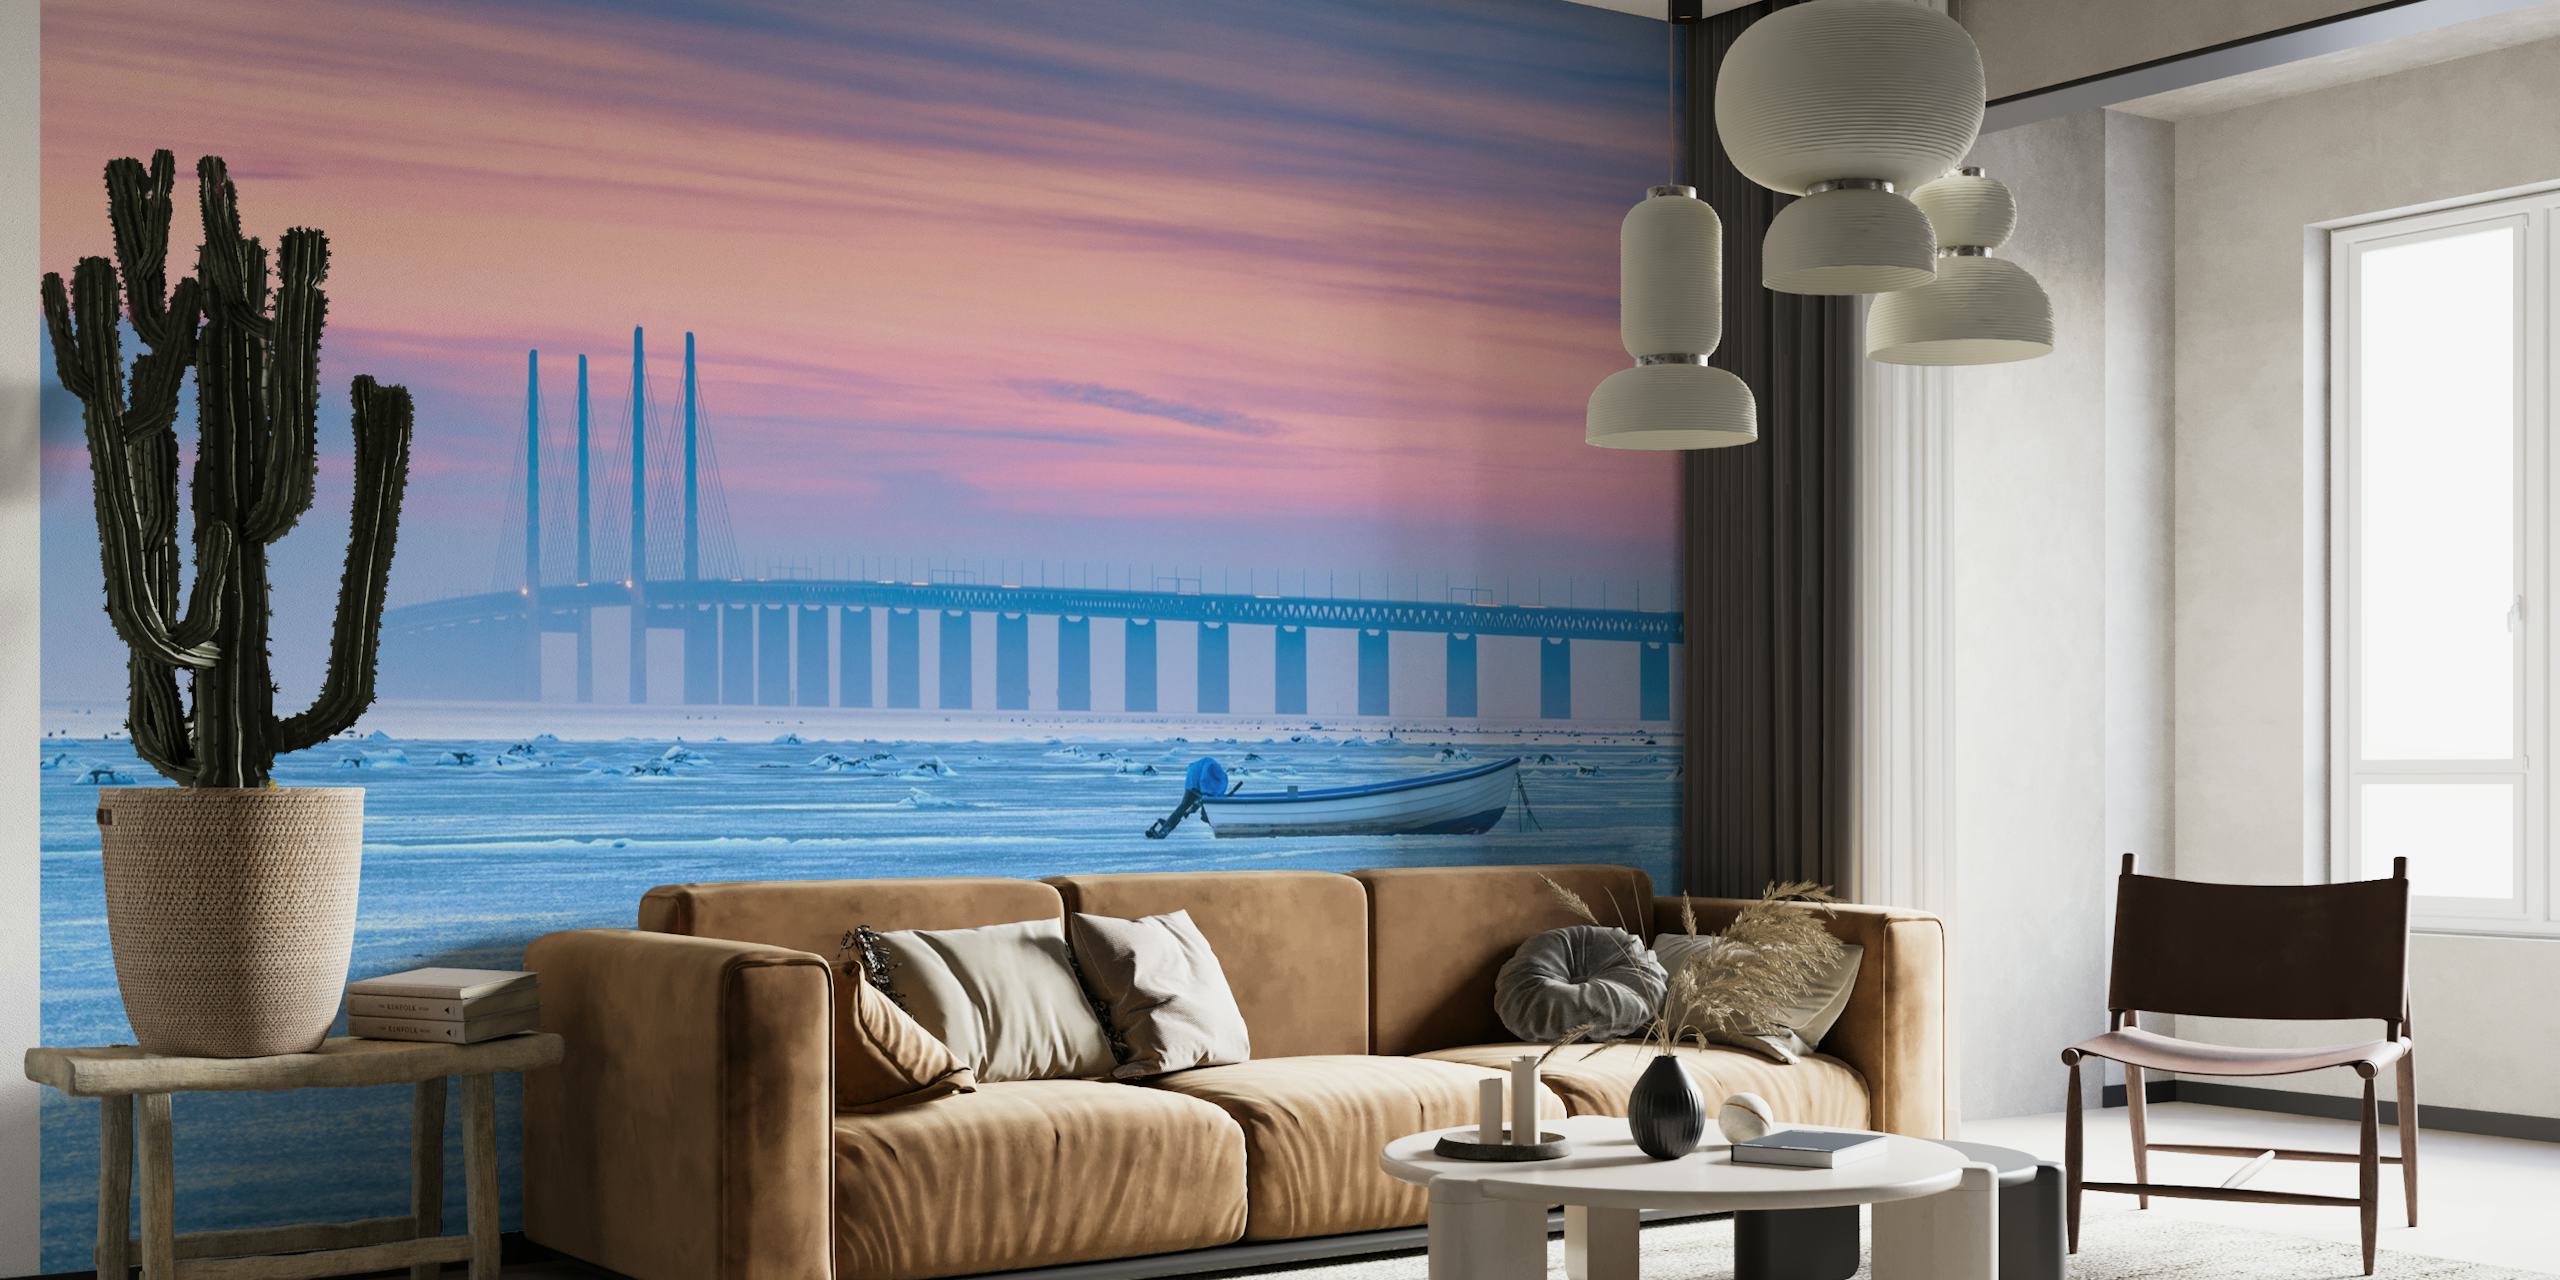 Eine Fototapete, die ein gefrorenes Meer mit einem ruhigen pastellfarbenen Himmel, einer fernen Brücke und einem einsamen Boot zeigt